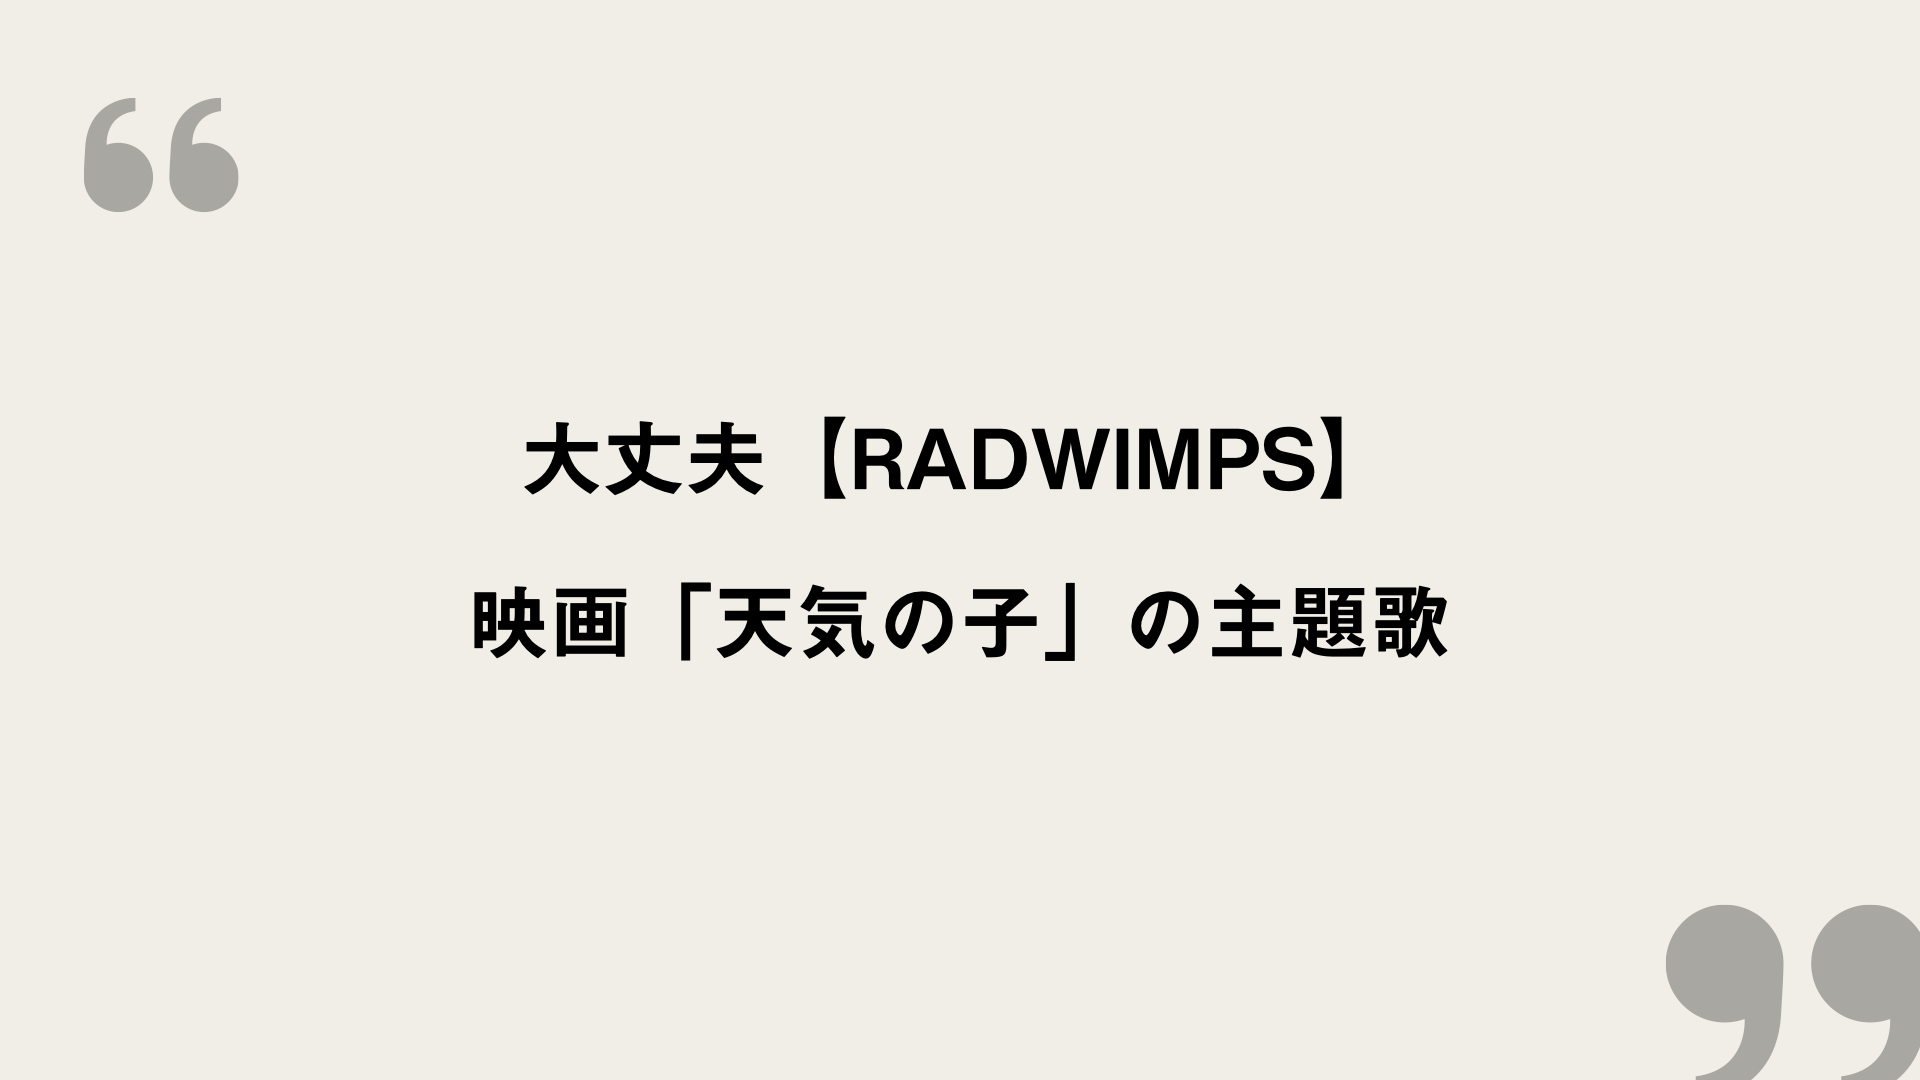 大丈夫 Radwimps 歌詞の意味を考察 映画 天気の子 の主題歌 Framu Media